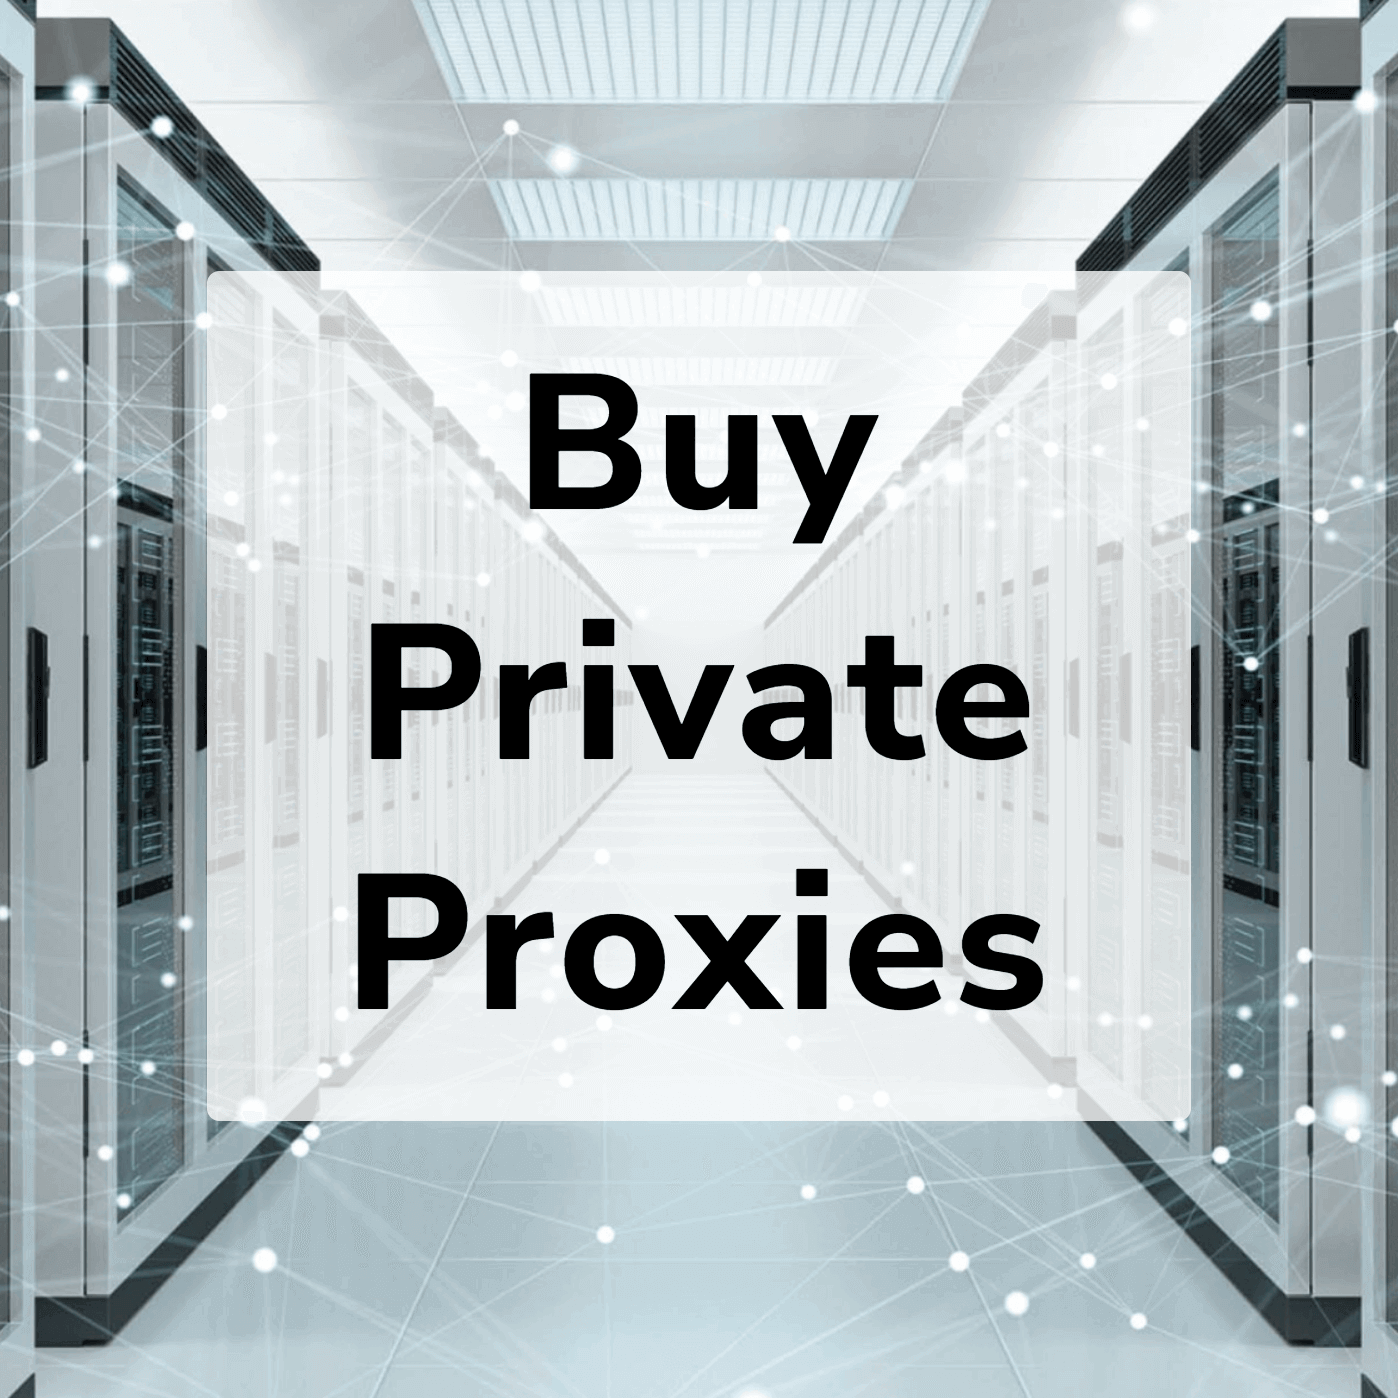 Proxy sale. Proxies static